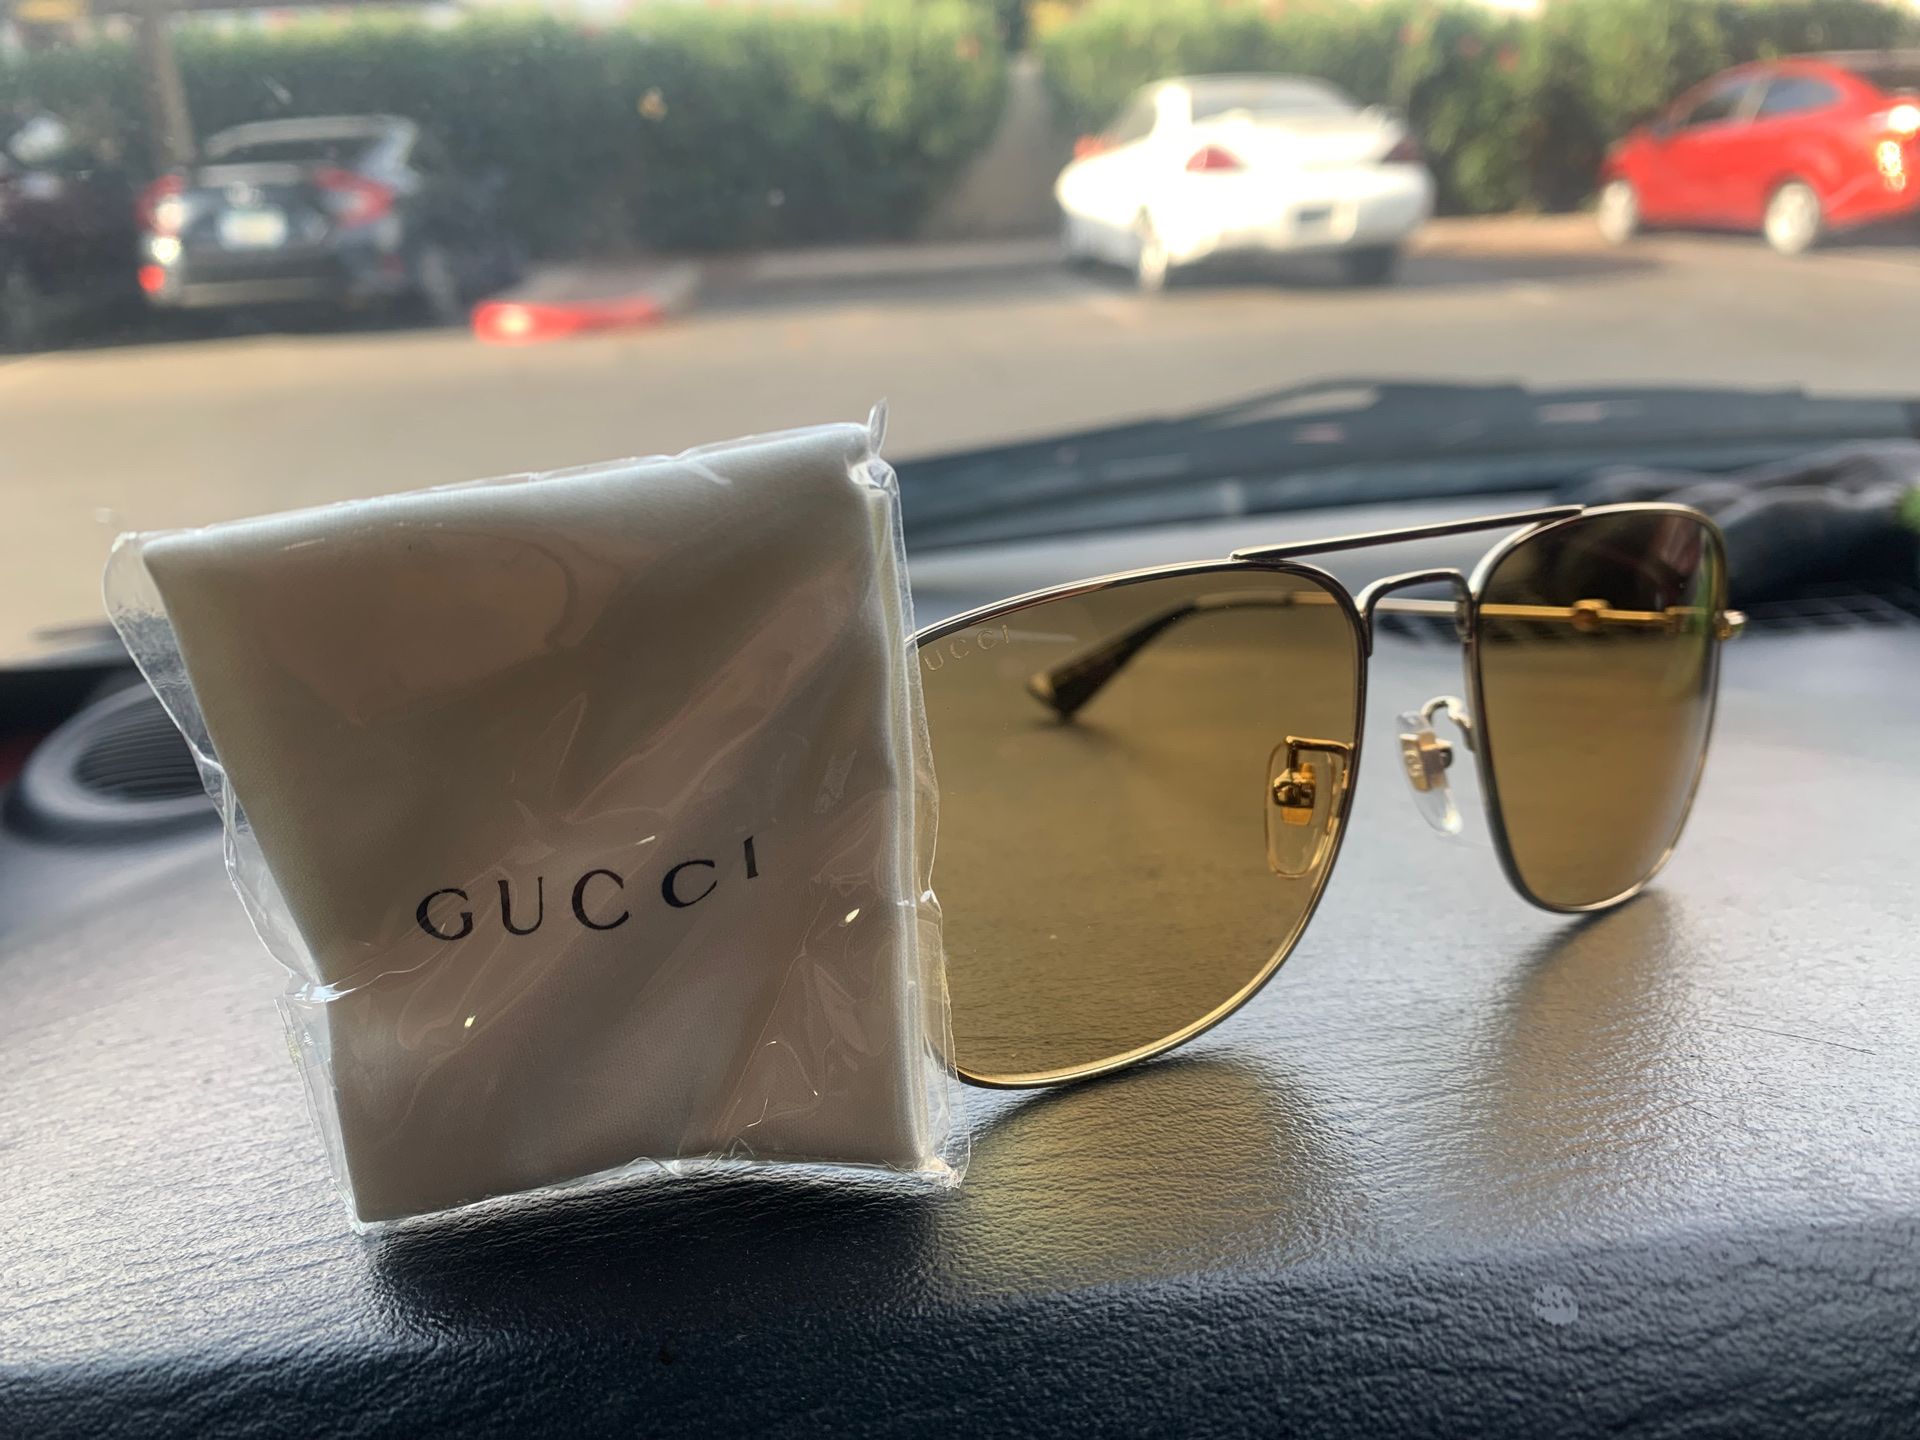 Male Gucci sunglasses